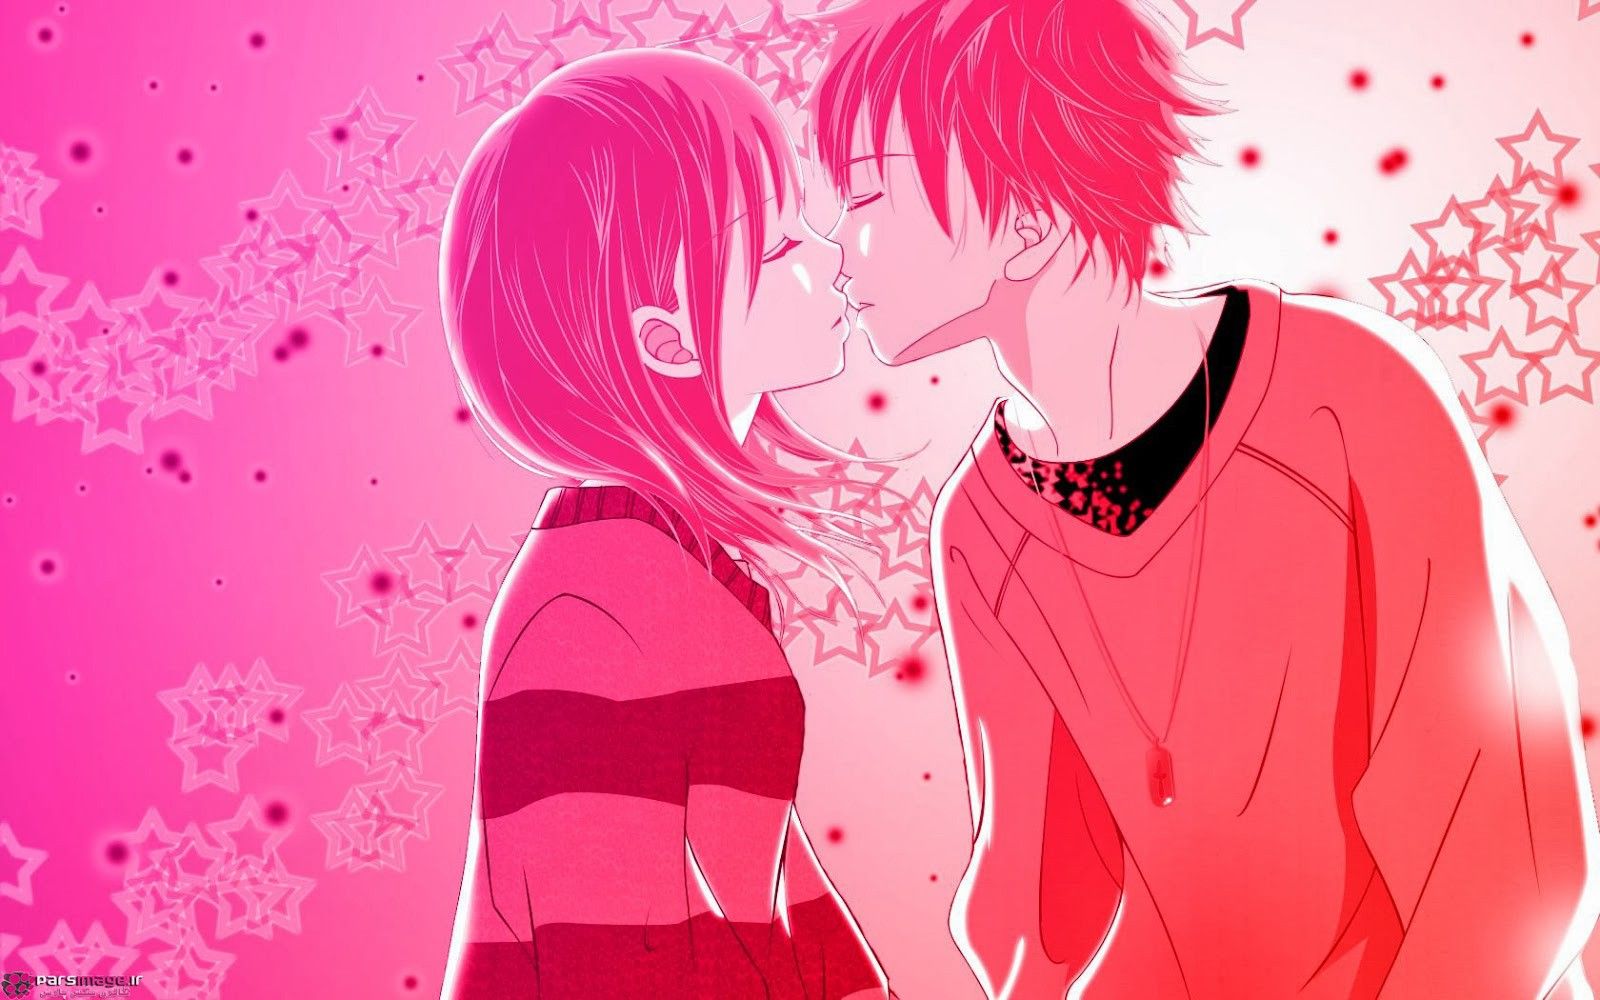 Anime Boy And Girl Kissing Wallpapers